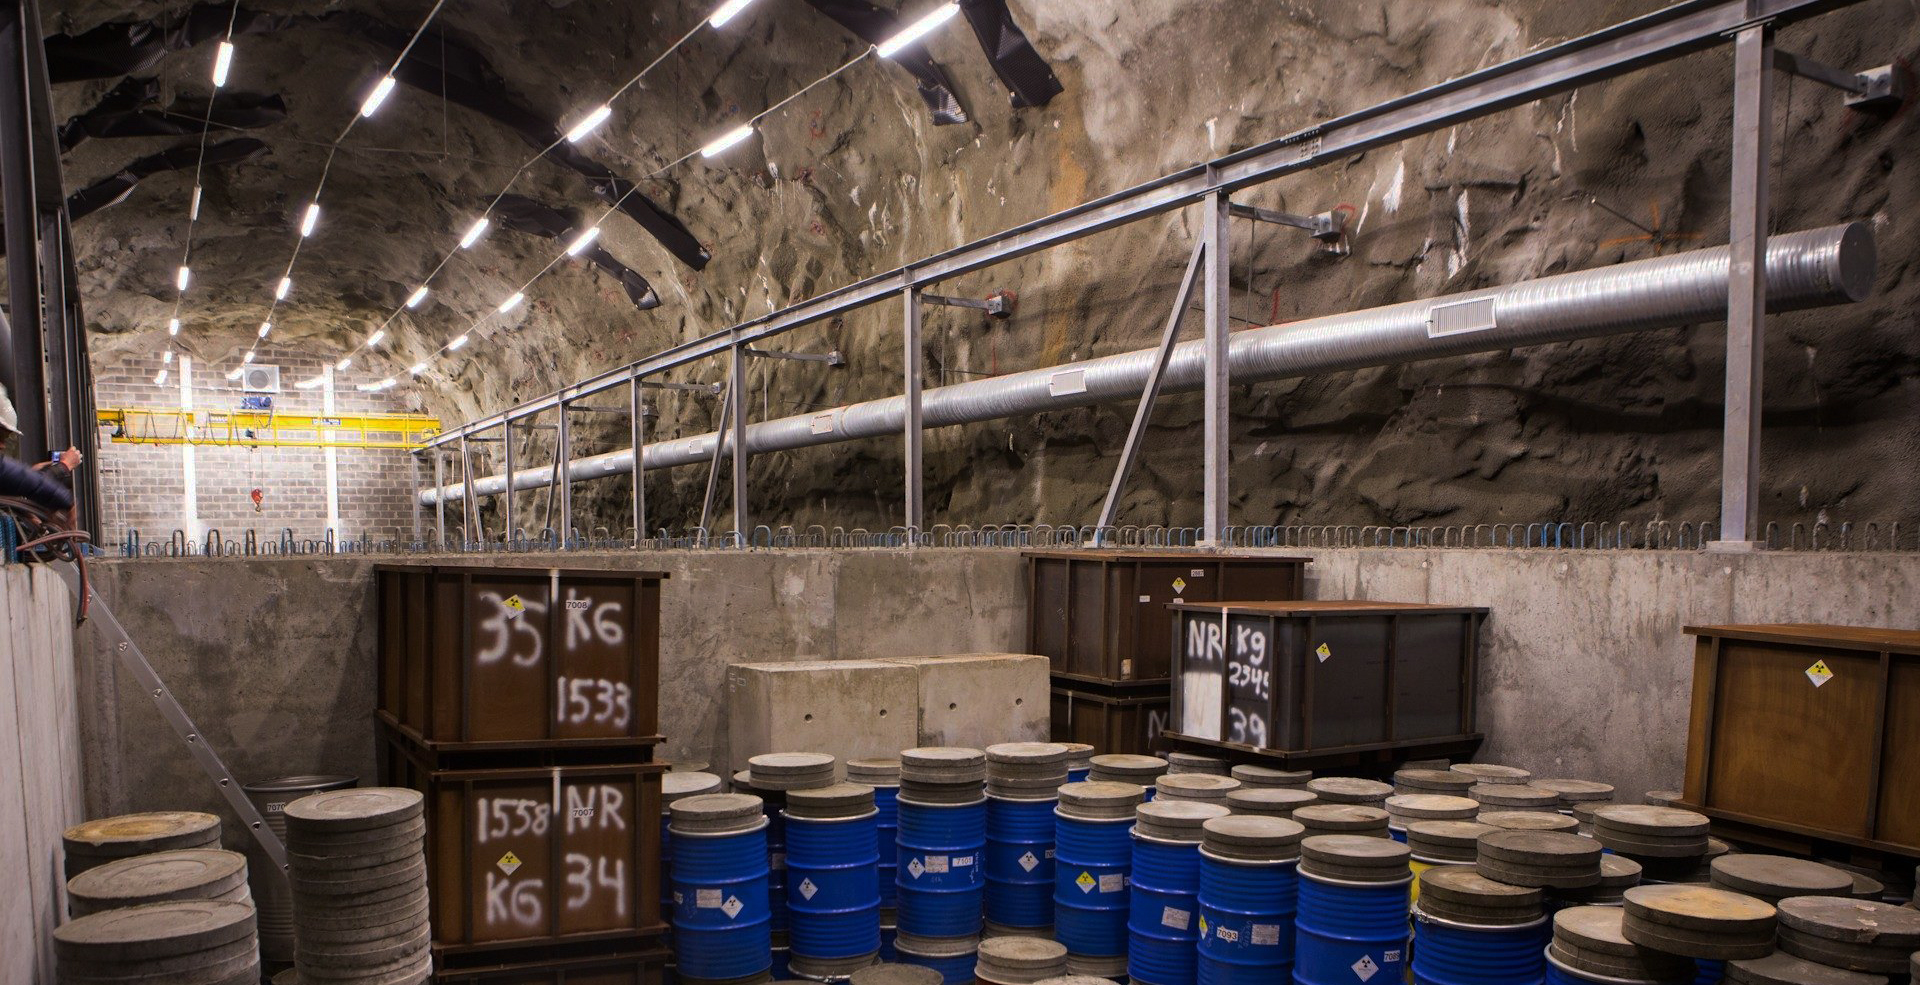 Bilde fra KLDRA, depot og lagringsplass for lav- og mellom-radioaktivt avfall. Grotte-rom med lysrør i taket og kasser/tønner langs gulvet.